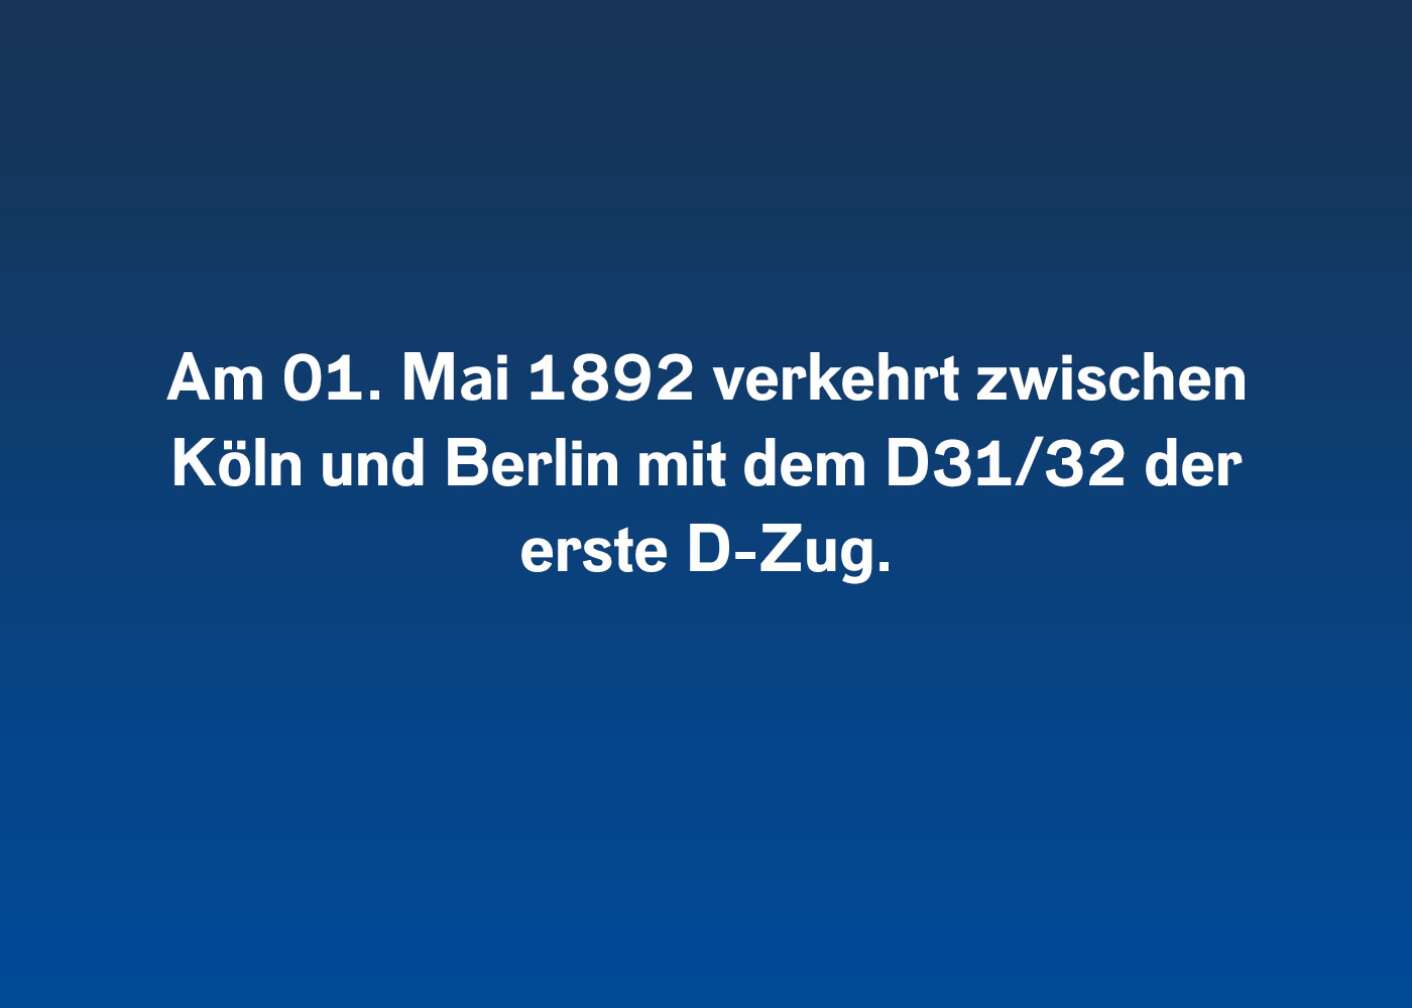 Am 01. Mai 1892 verkehrt zwischen Köln und Berlin mit dem D31/32 erste D-Zug.